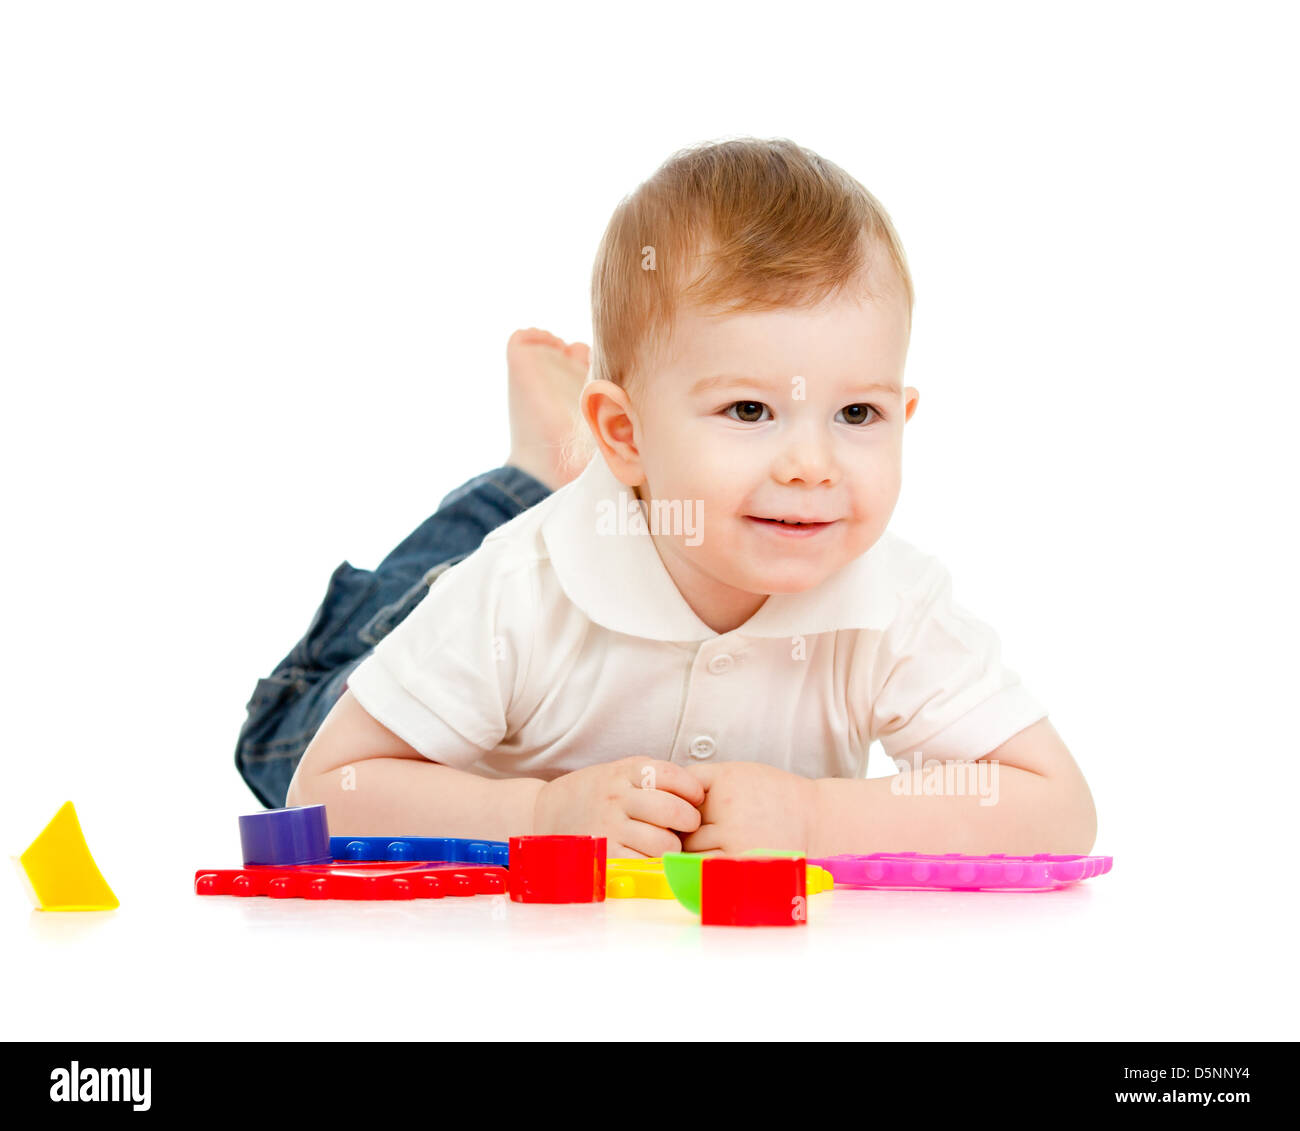 Nettes kleines Kind spielt mit Spielzeug auf Boden, liegend, isoliert auf weiß Stockfoto